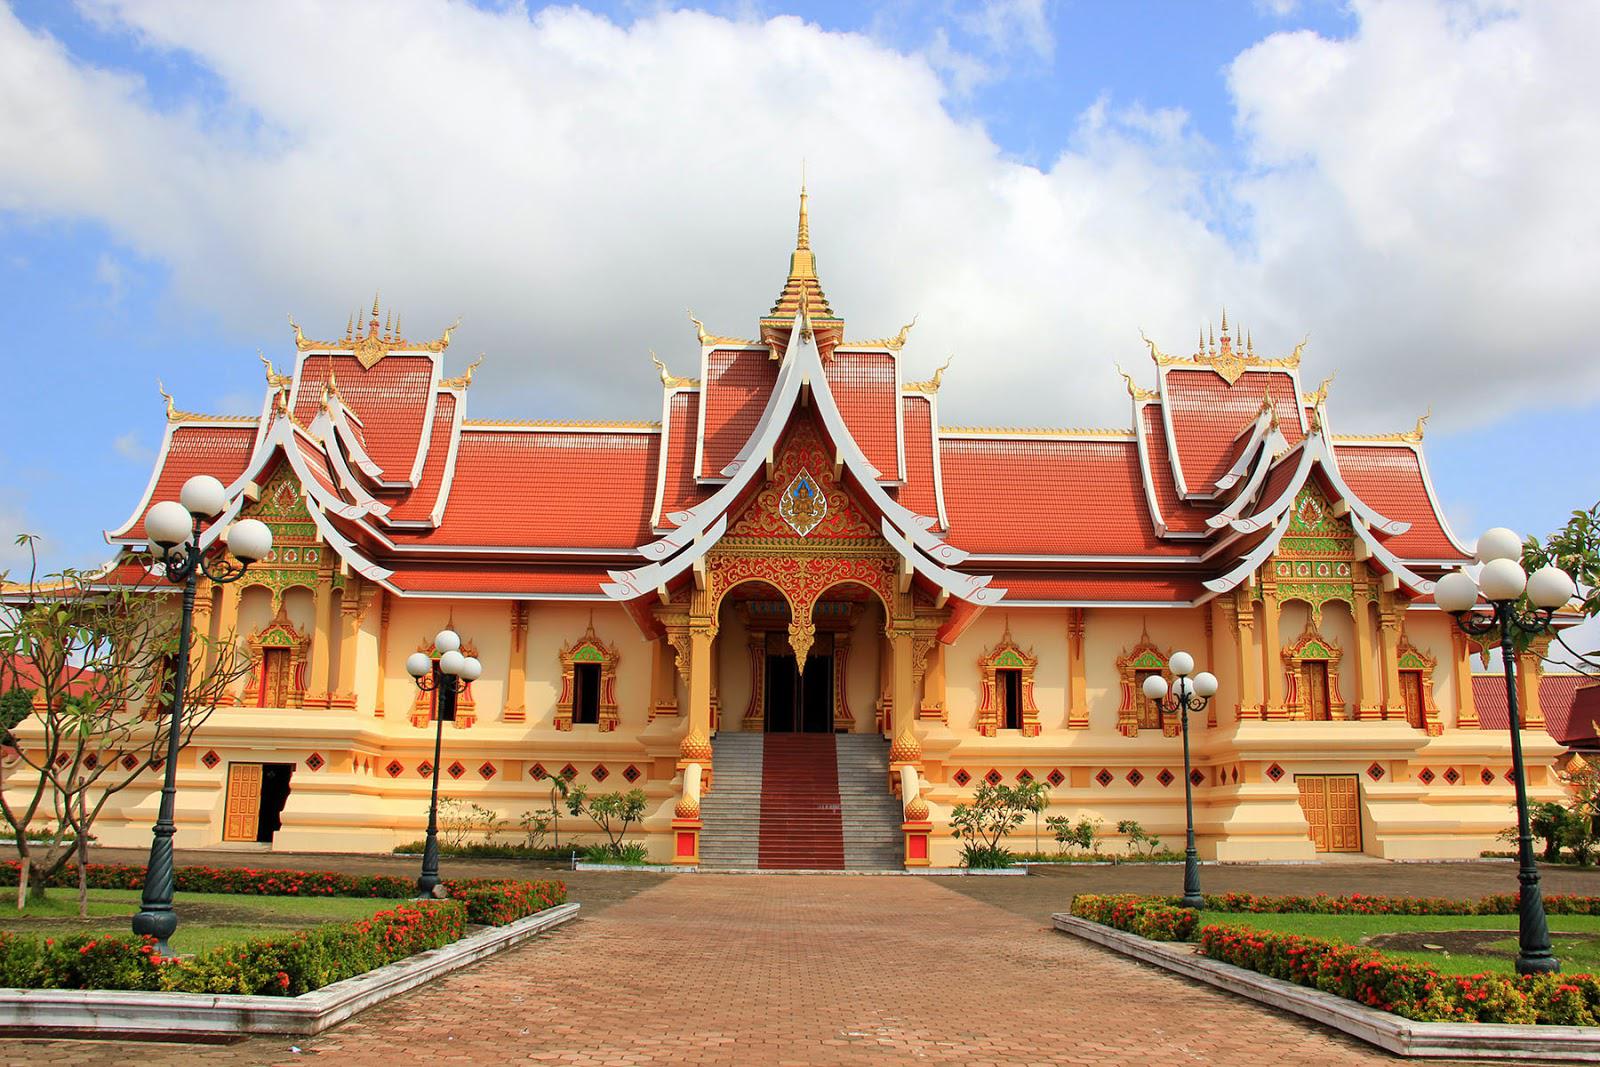 Luang Prabang - The Cultural Capital Of Laos 4 Days